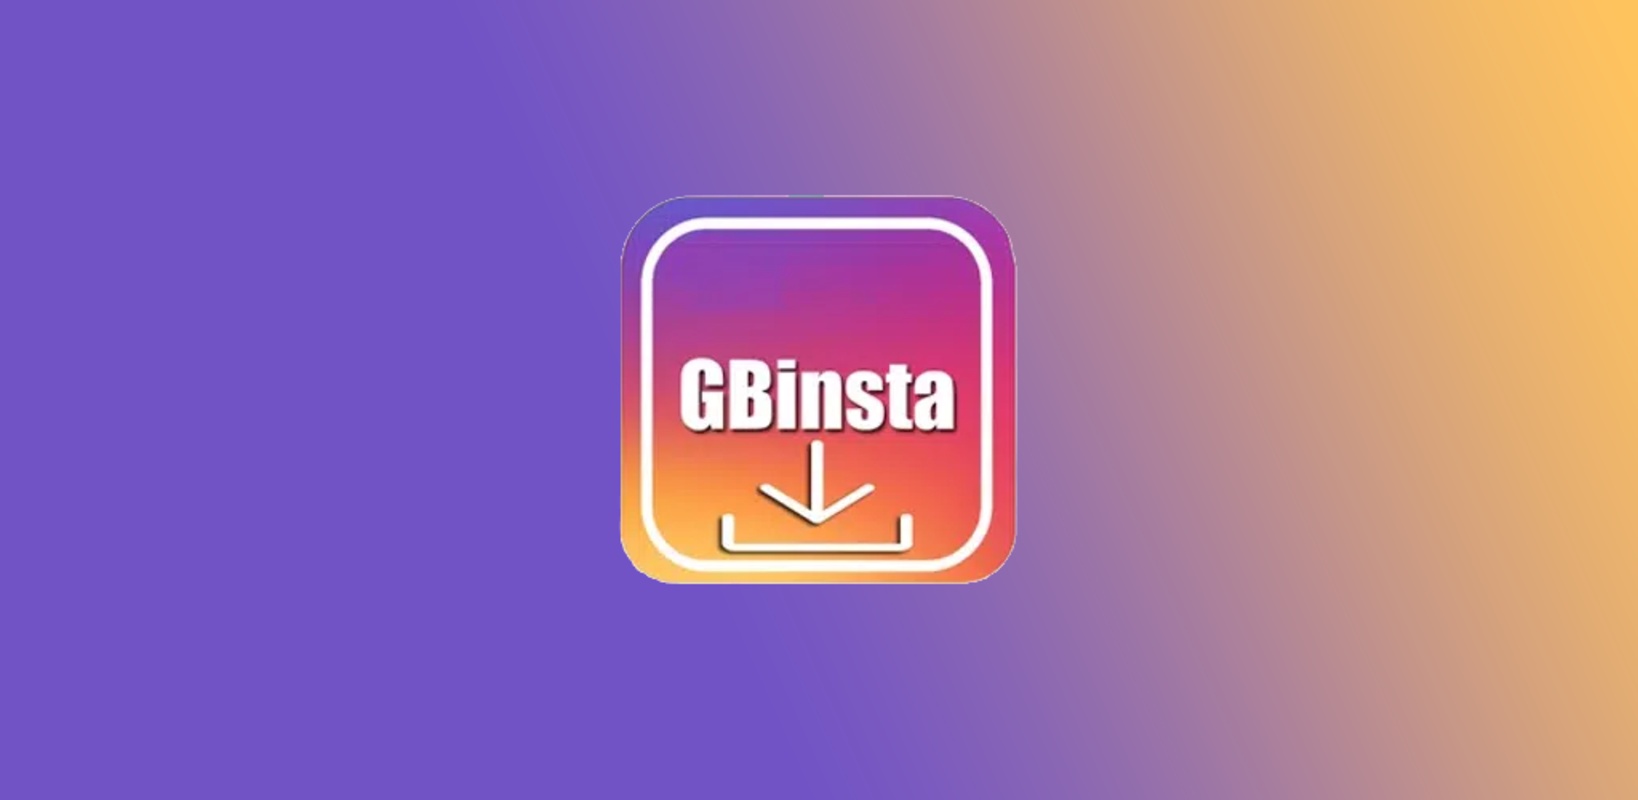 GBInsta 283.0.0.20.105 APK feature